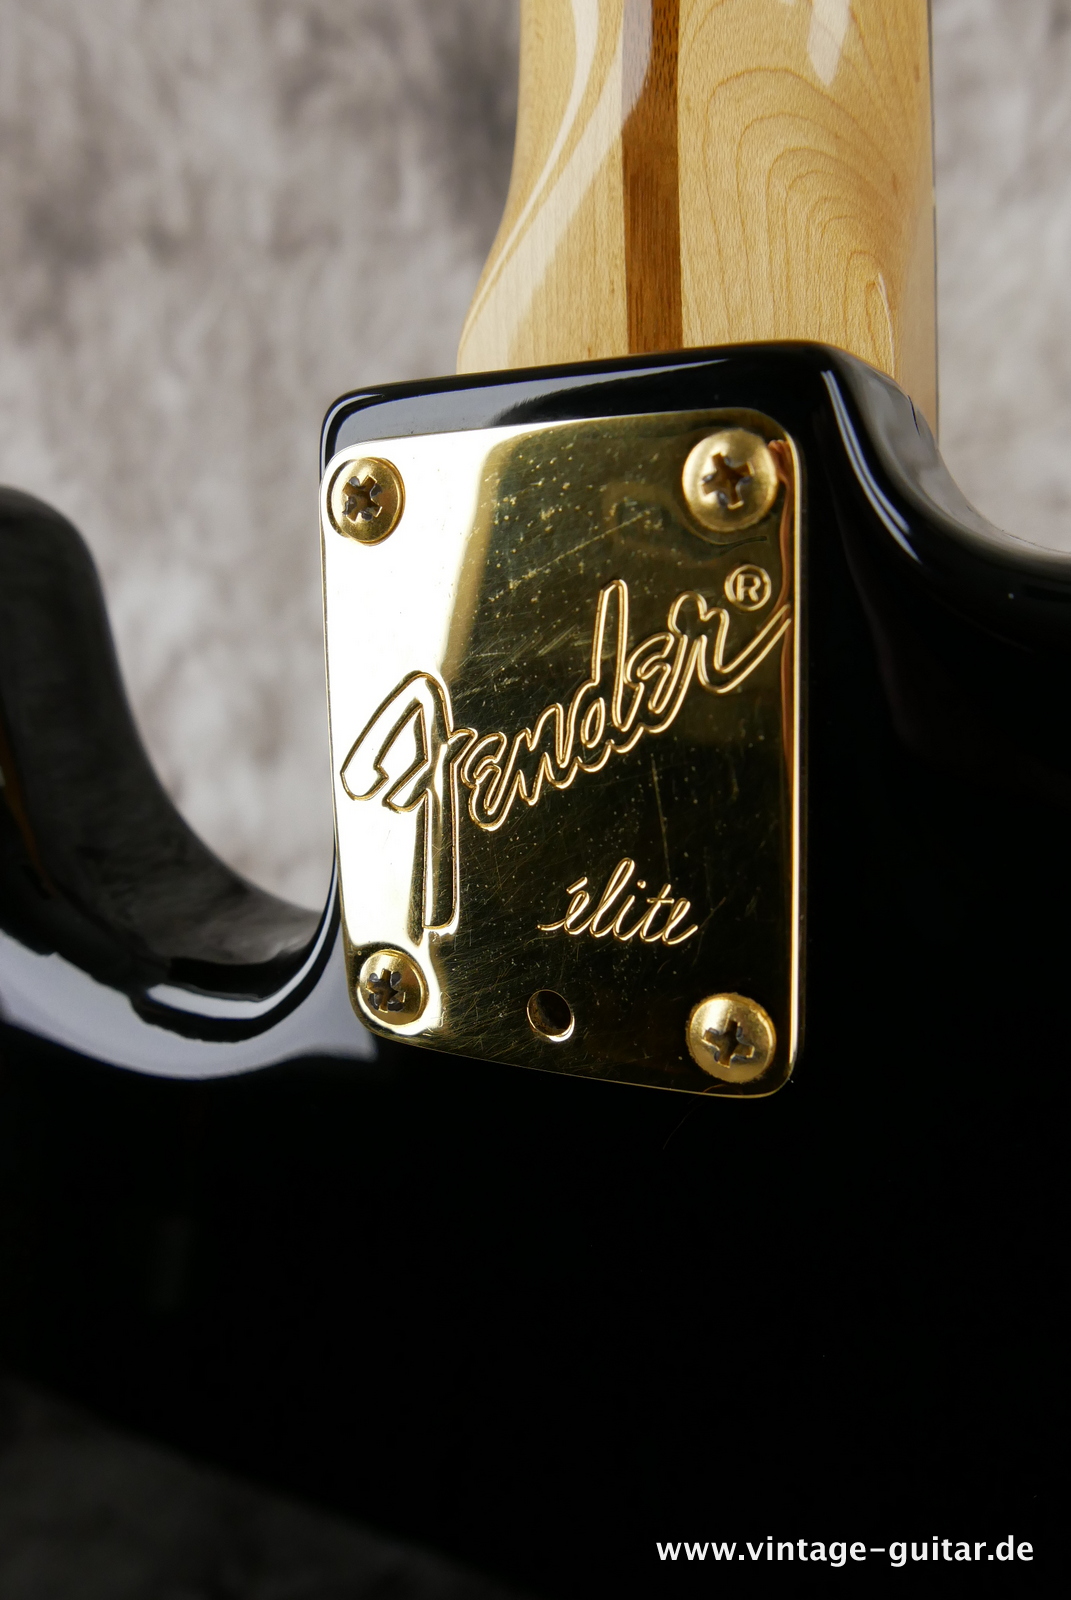 img/vintage/5166/Fender_Stratocaster_elite_USA_black_1983-013.JPG